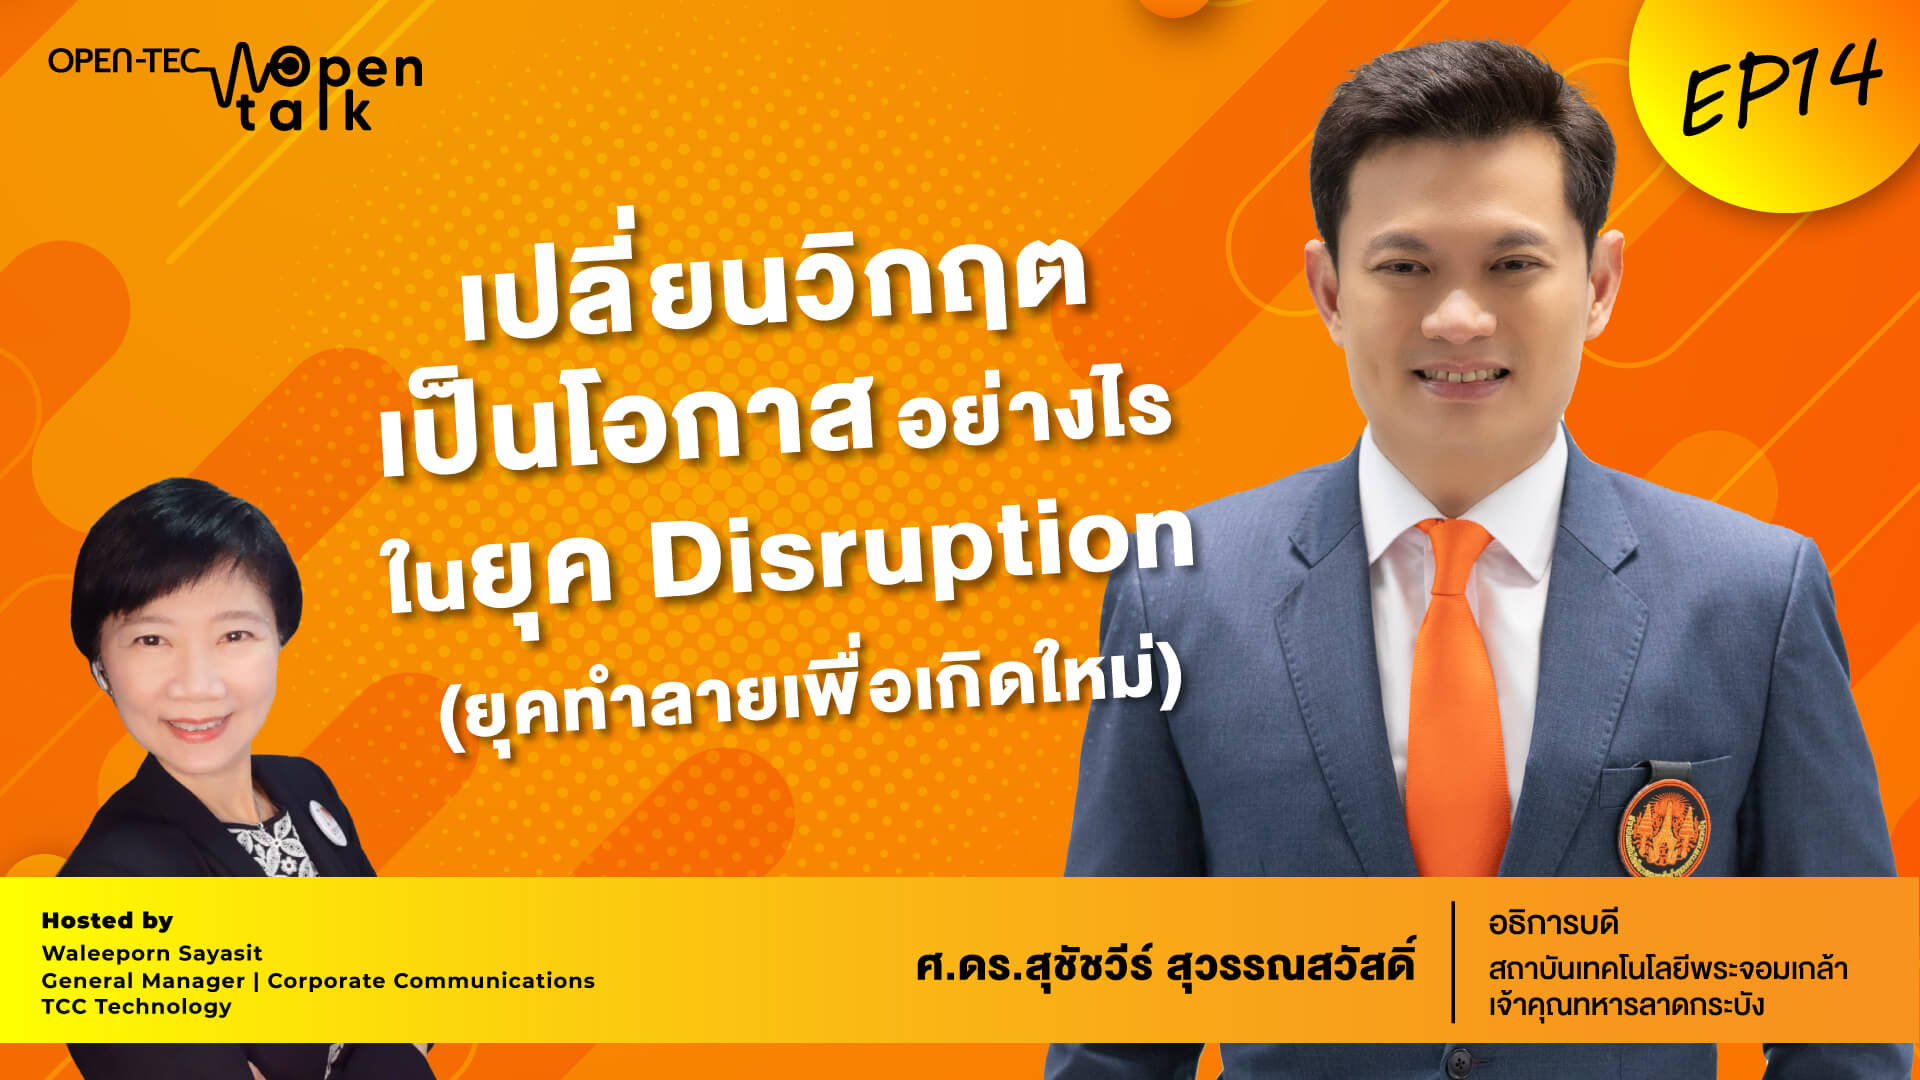 ถอดรหัสลับสู่ความสำเร็จในฐานะ The Disruptor แถวหน้าของเมืองไทย